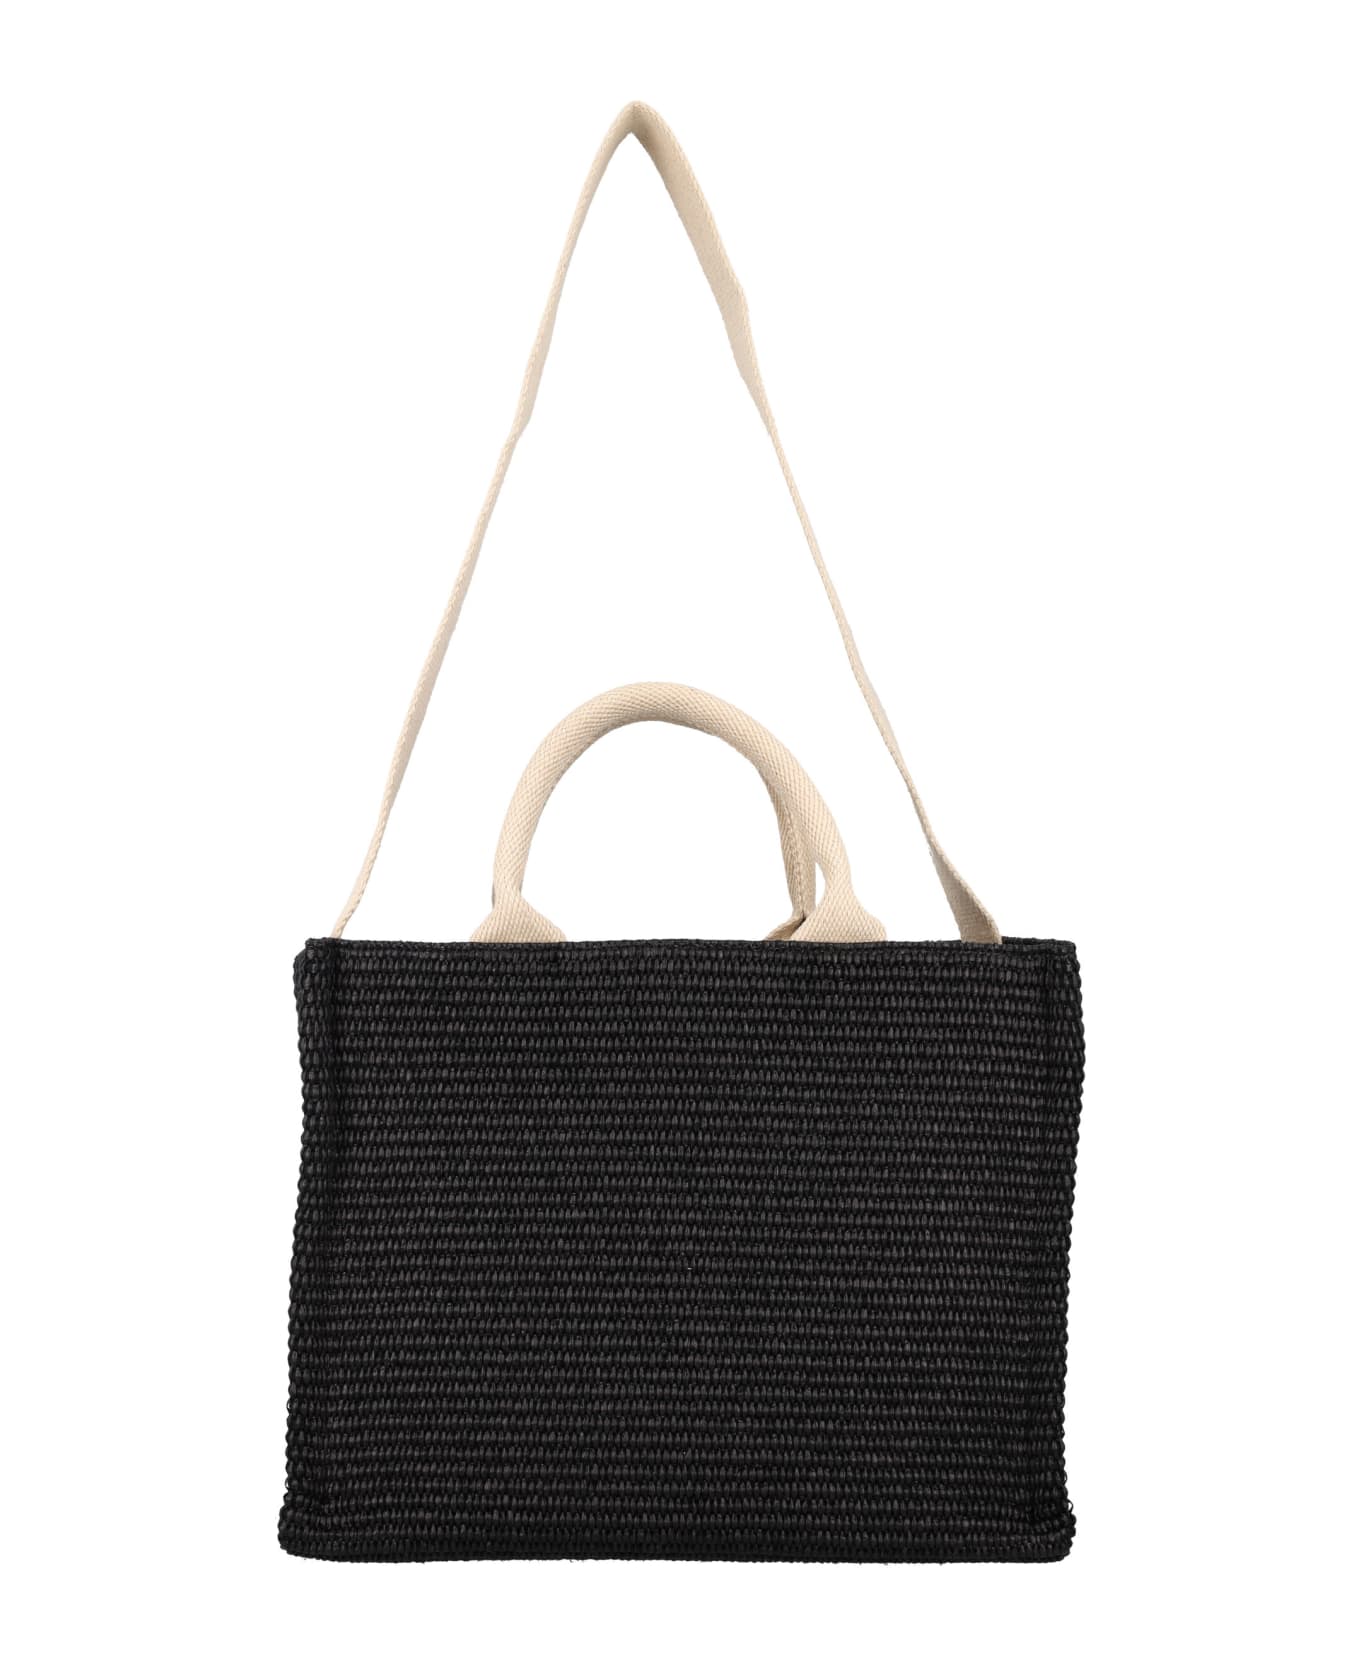 Marni Small Raffia Tote Bag - BLACK